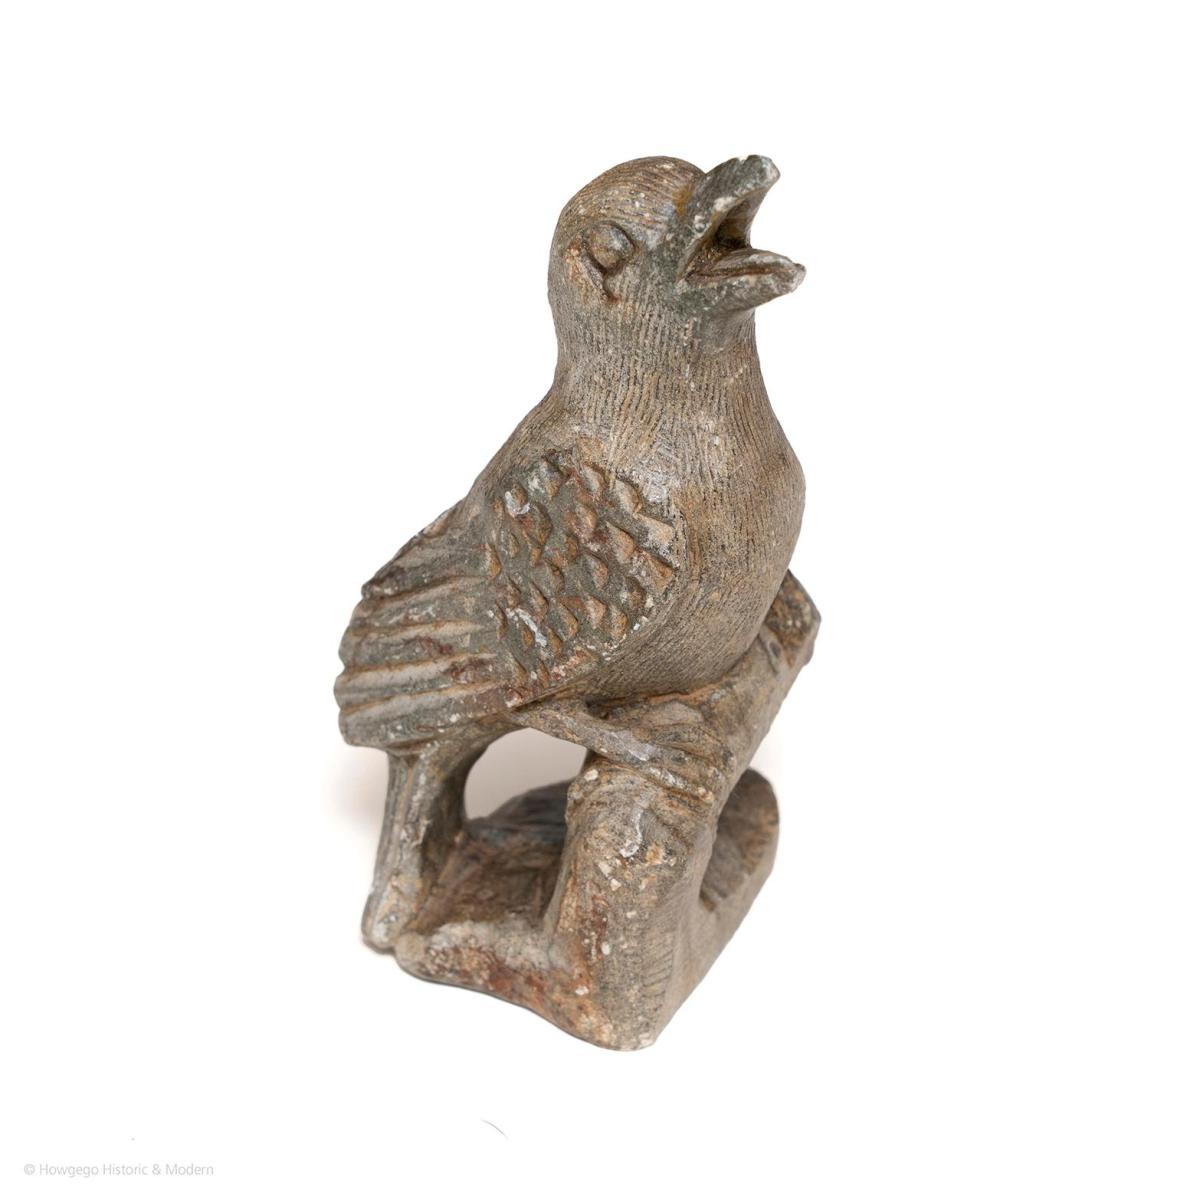 Singing Bird Sculpture, circa 1880